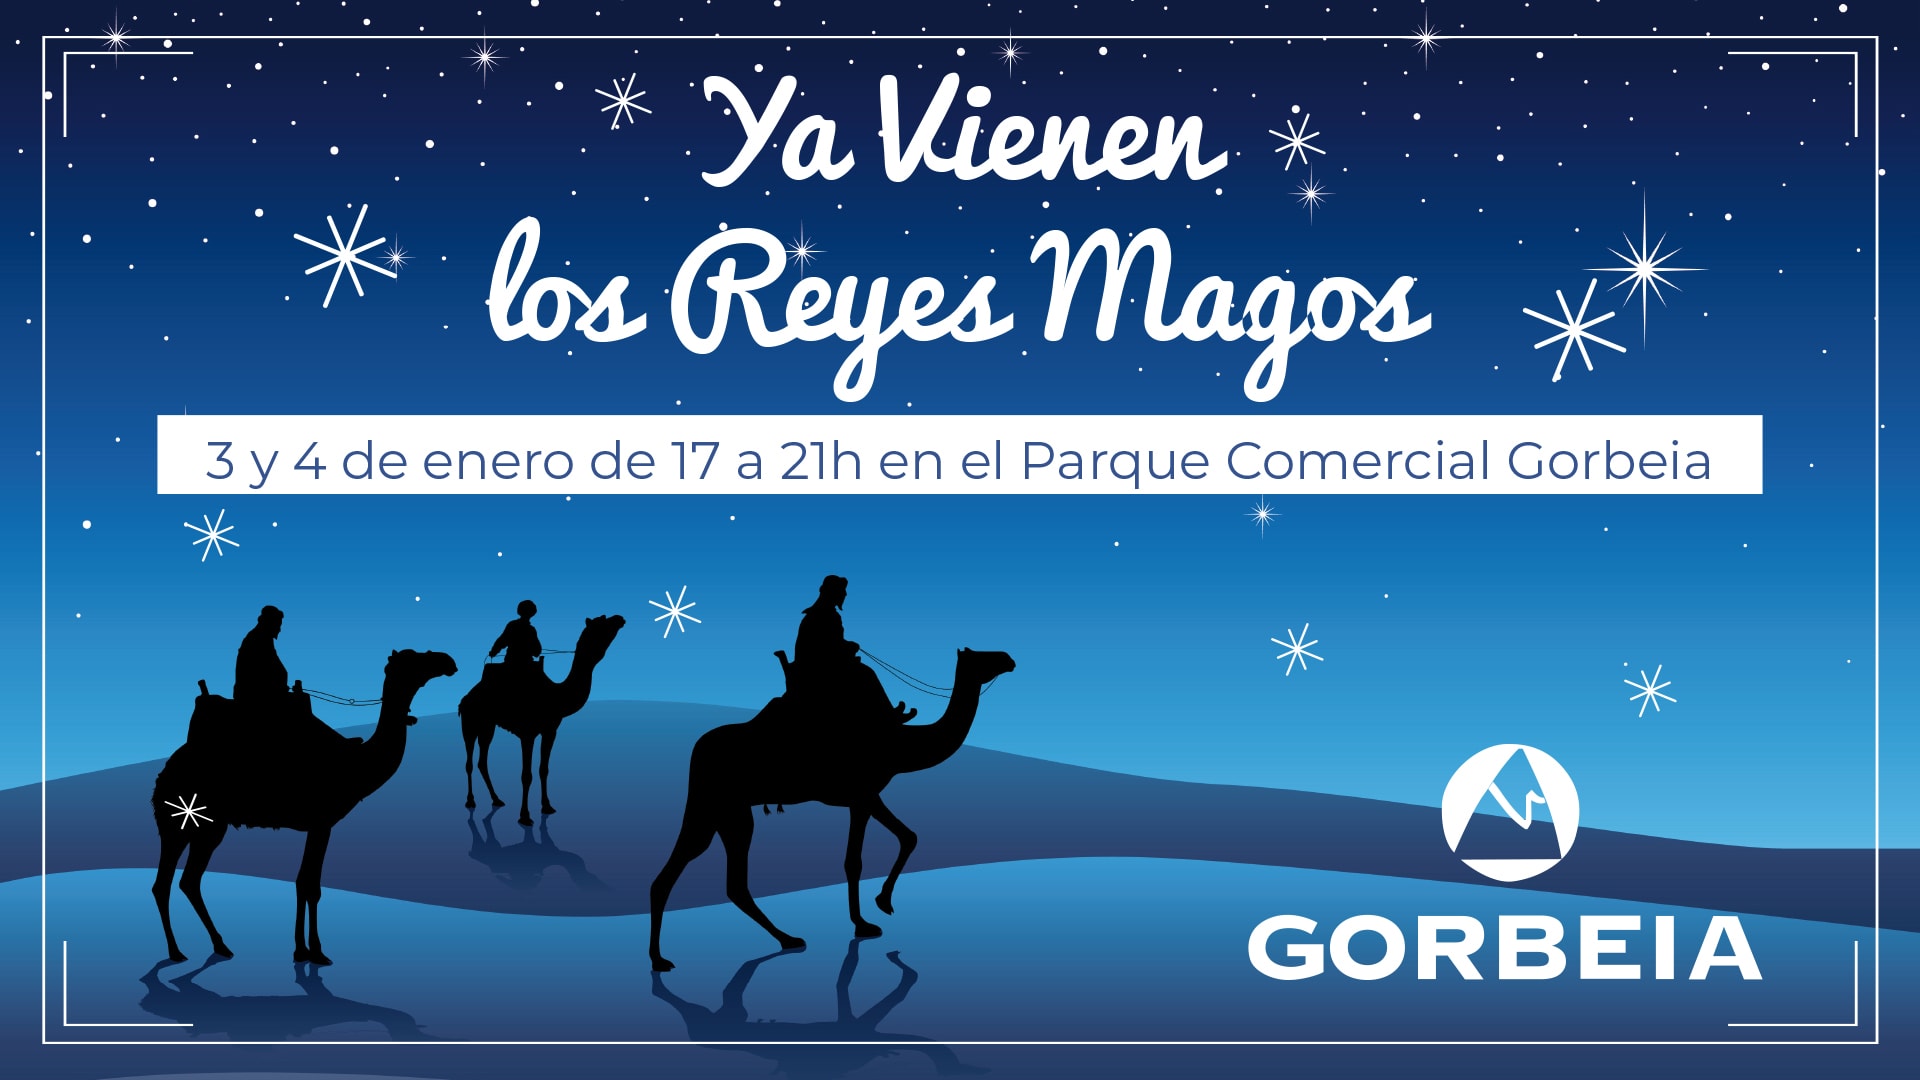 ¡Los Reyes Magos visitan el Parque Comercial Gorbeia!